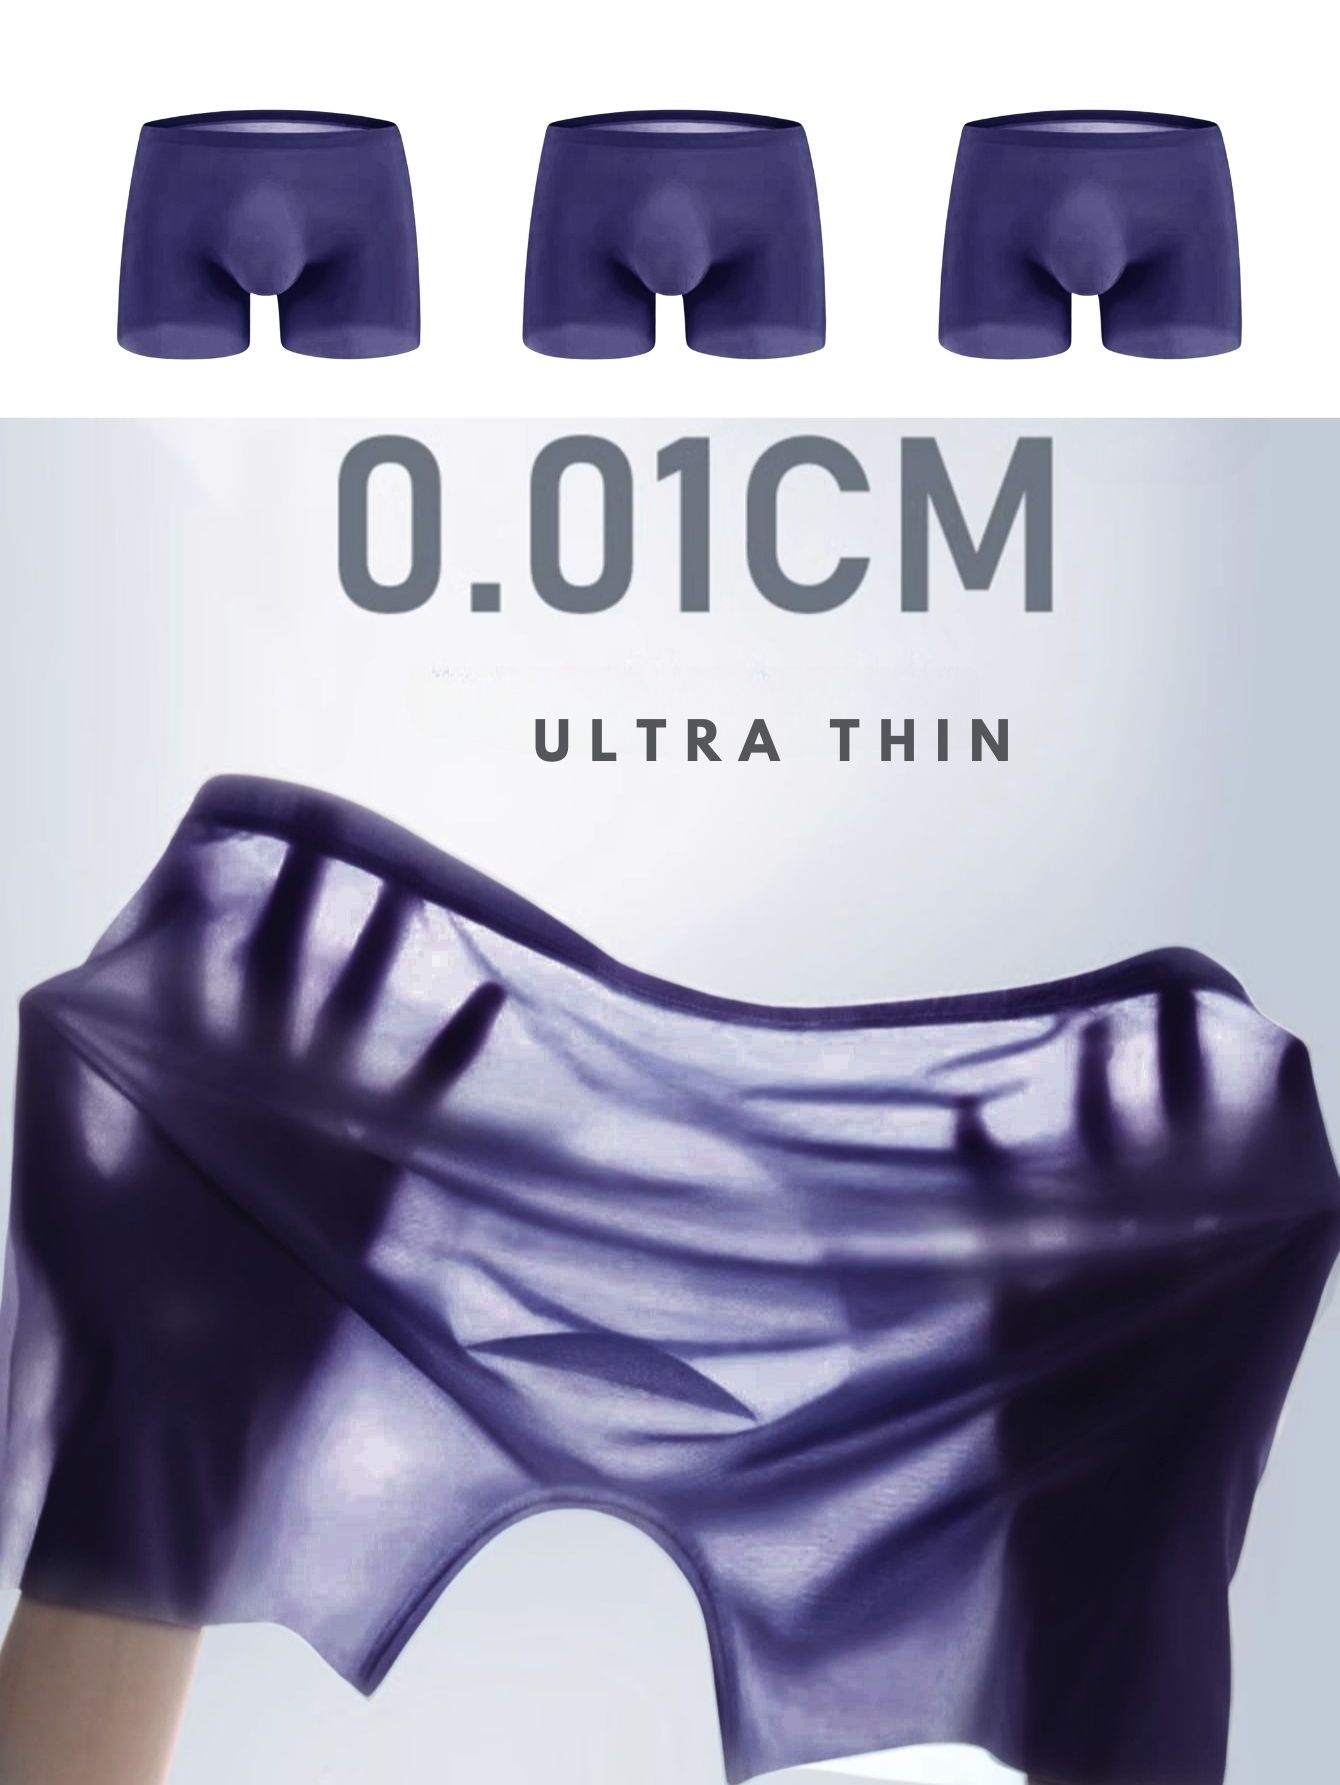 6 Best Men's Seamless Underwear in 2023